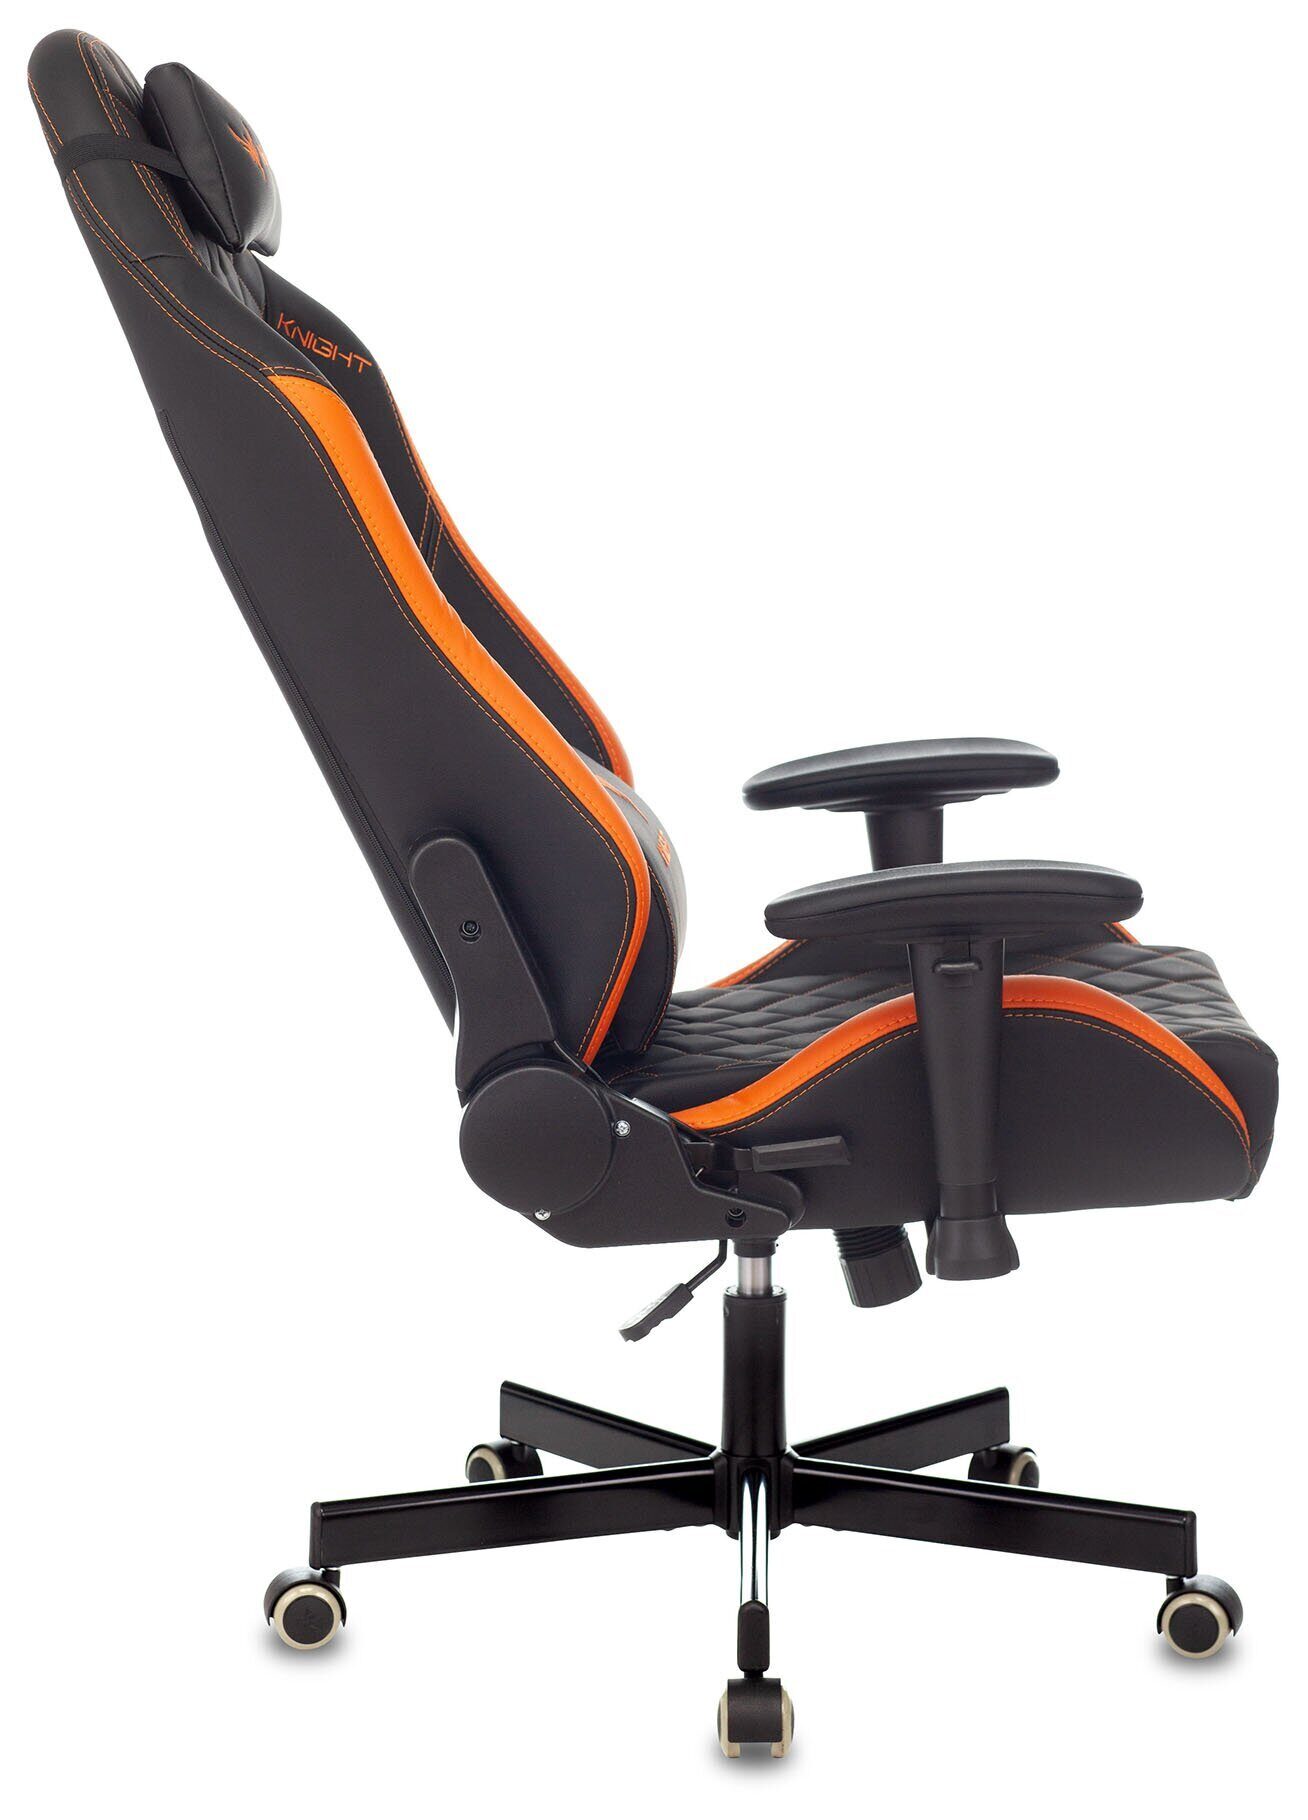 Кресло игровое Knight EXPLORE Экокожа крестовина металл, черный/оранжевый ромбик